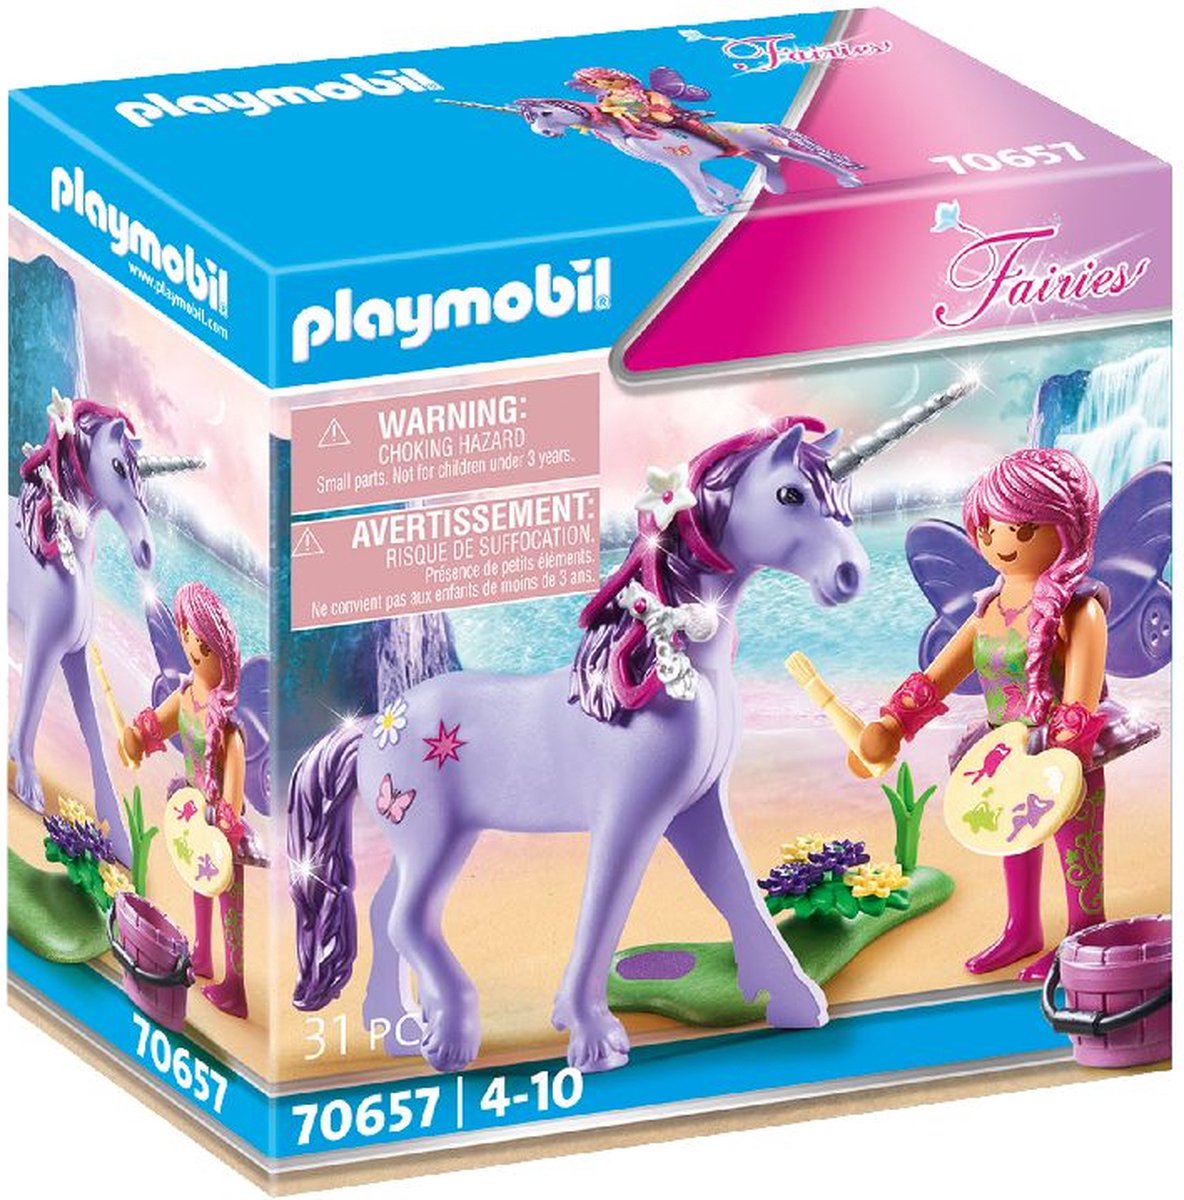 Playmobil Fairies 70657 figurine pour enfant | bol.com